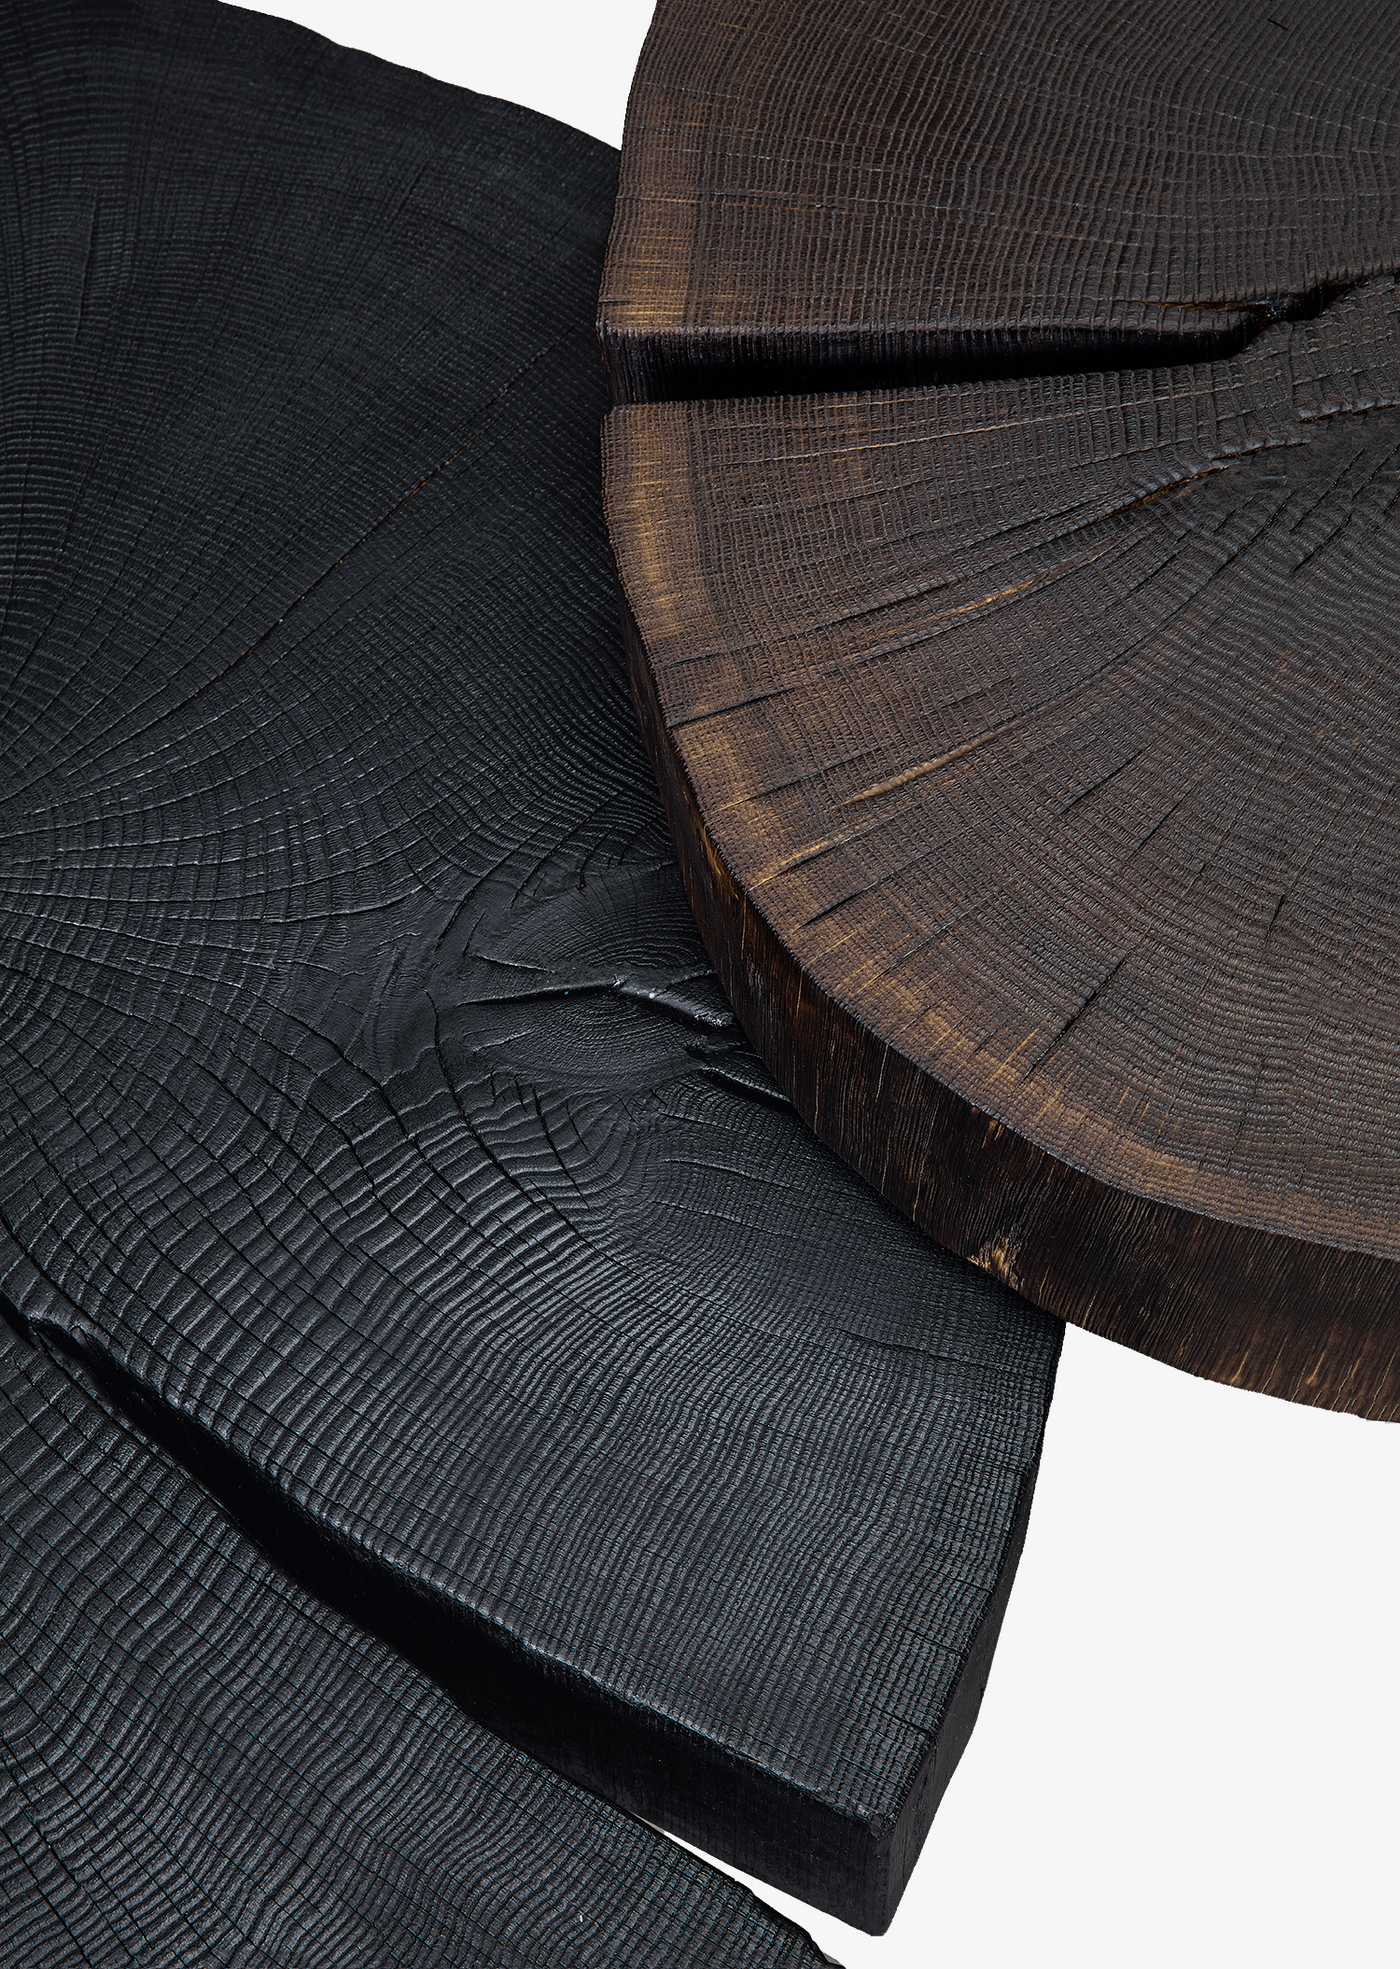 janua beistelltisch bc 05 stomp eiche geköhlt ton schwarz, höhe 28cm, massive baumscheibe auf filigranem metall, detailfoto